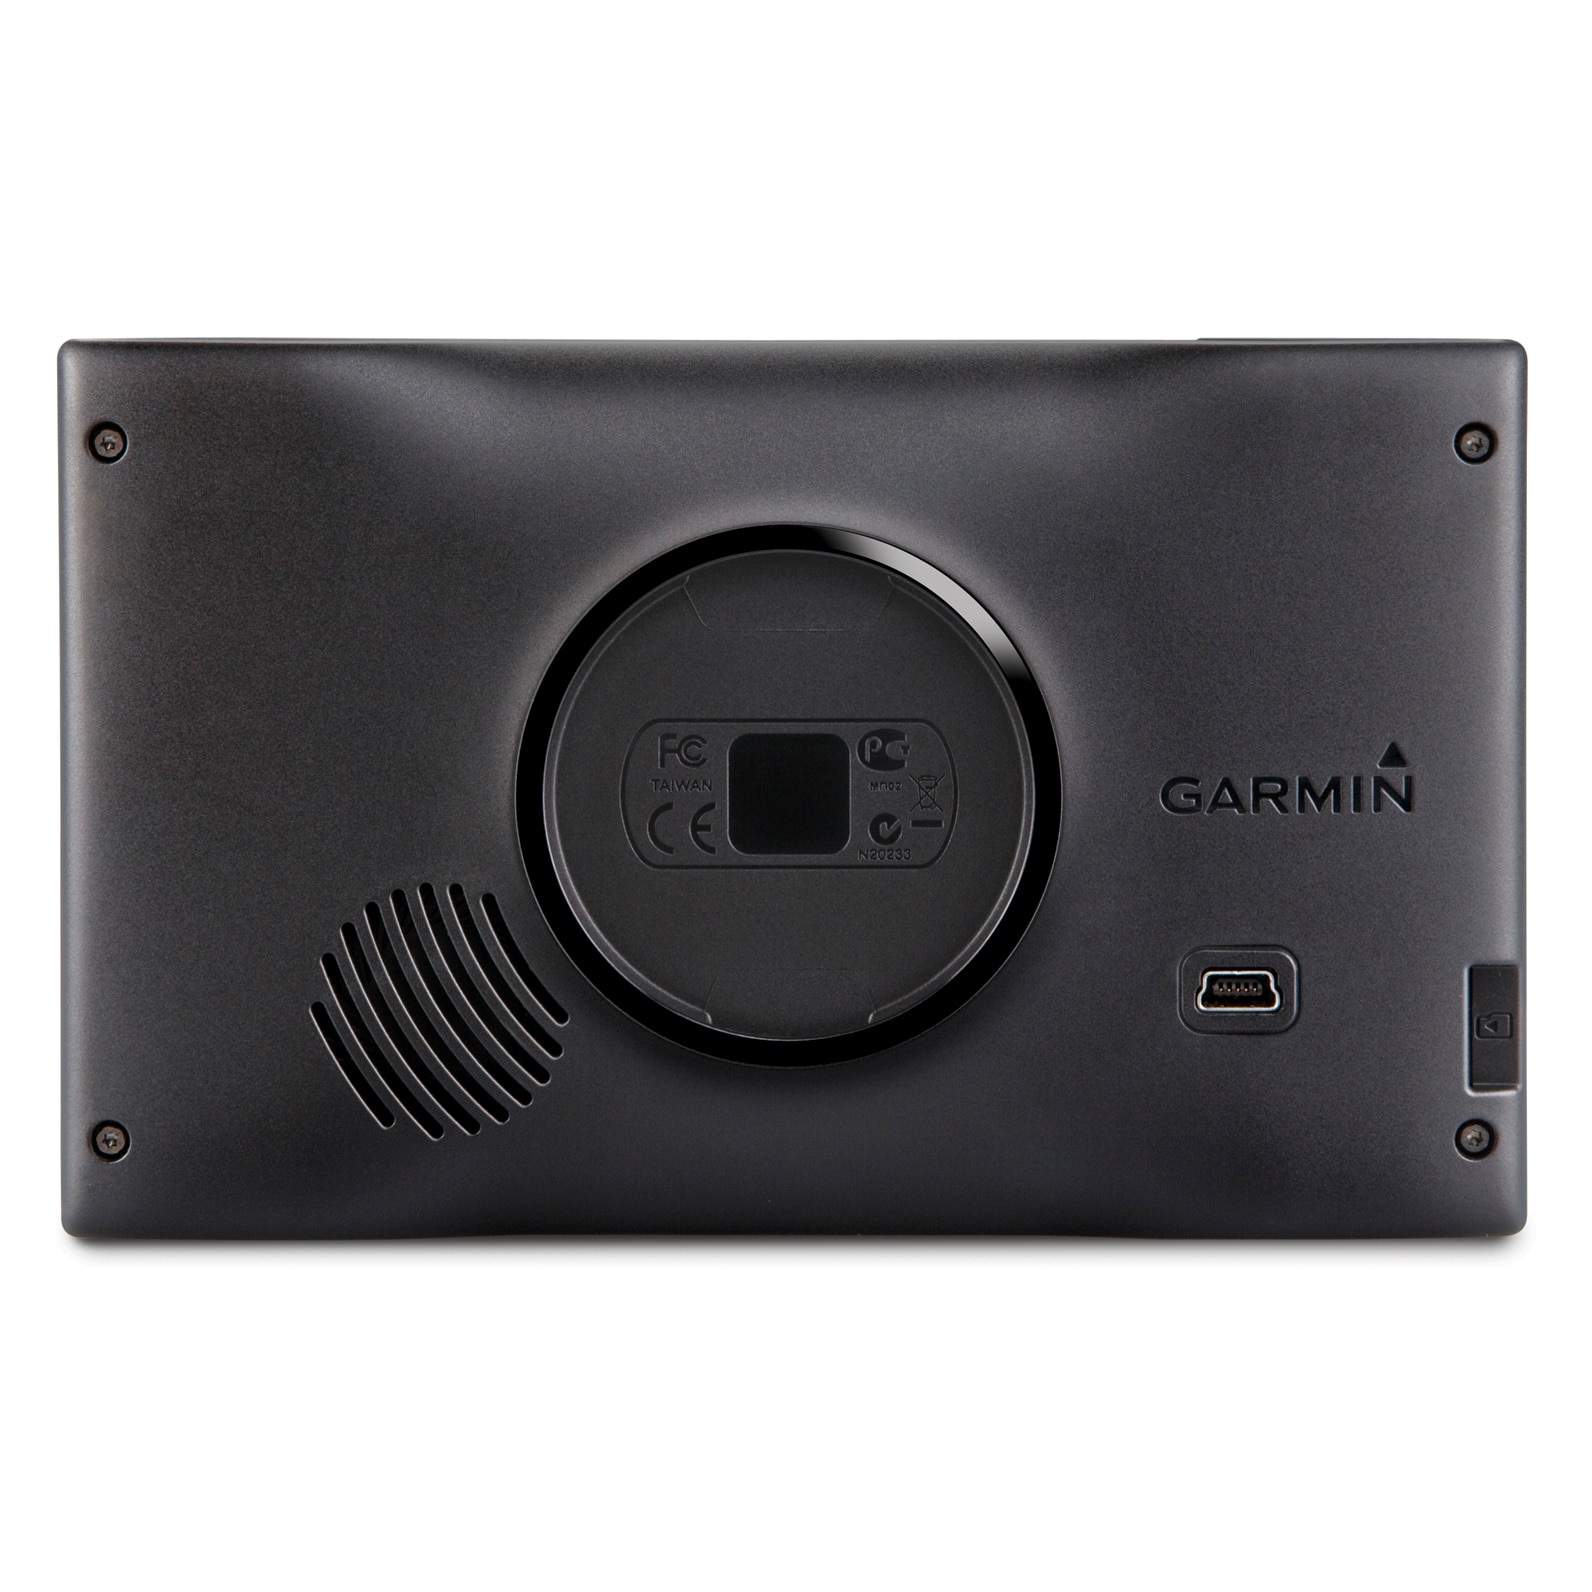 A garmin gps 45 frissítése PC-n keresztül. Szoftver: A garmin navigátor helyes frissítése